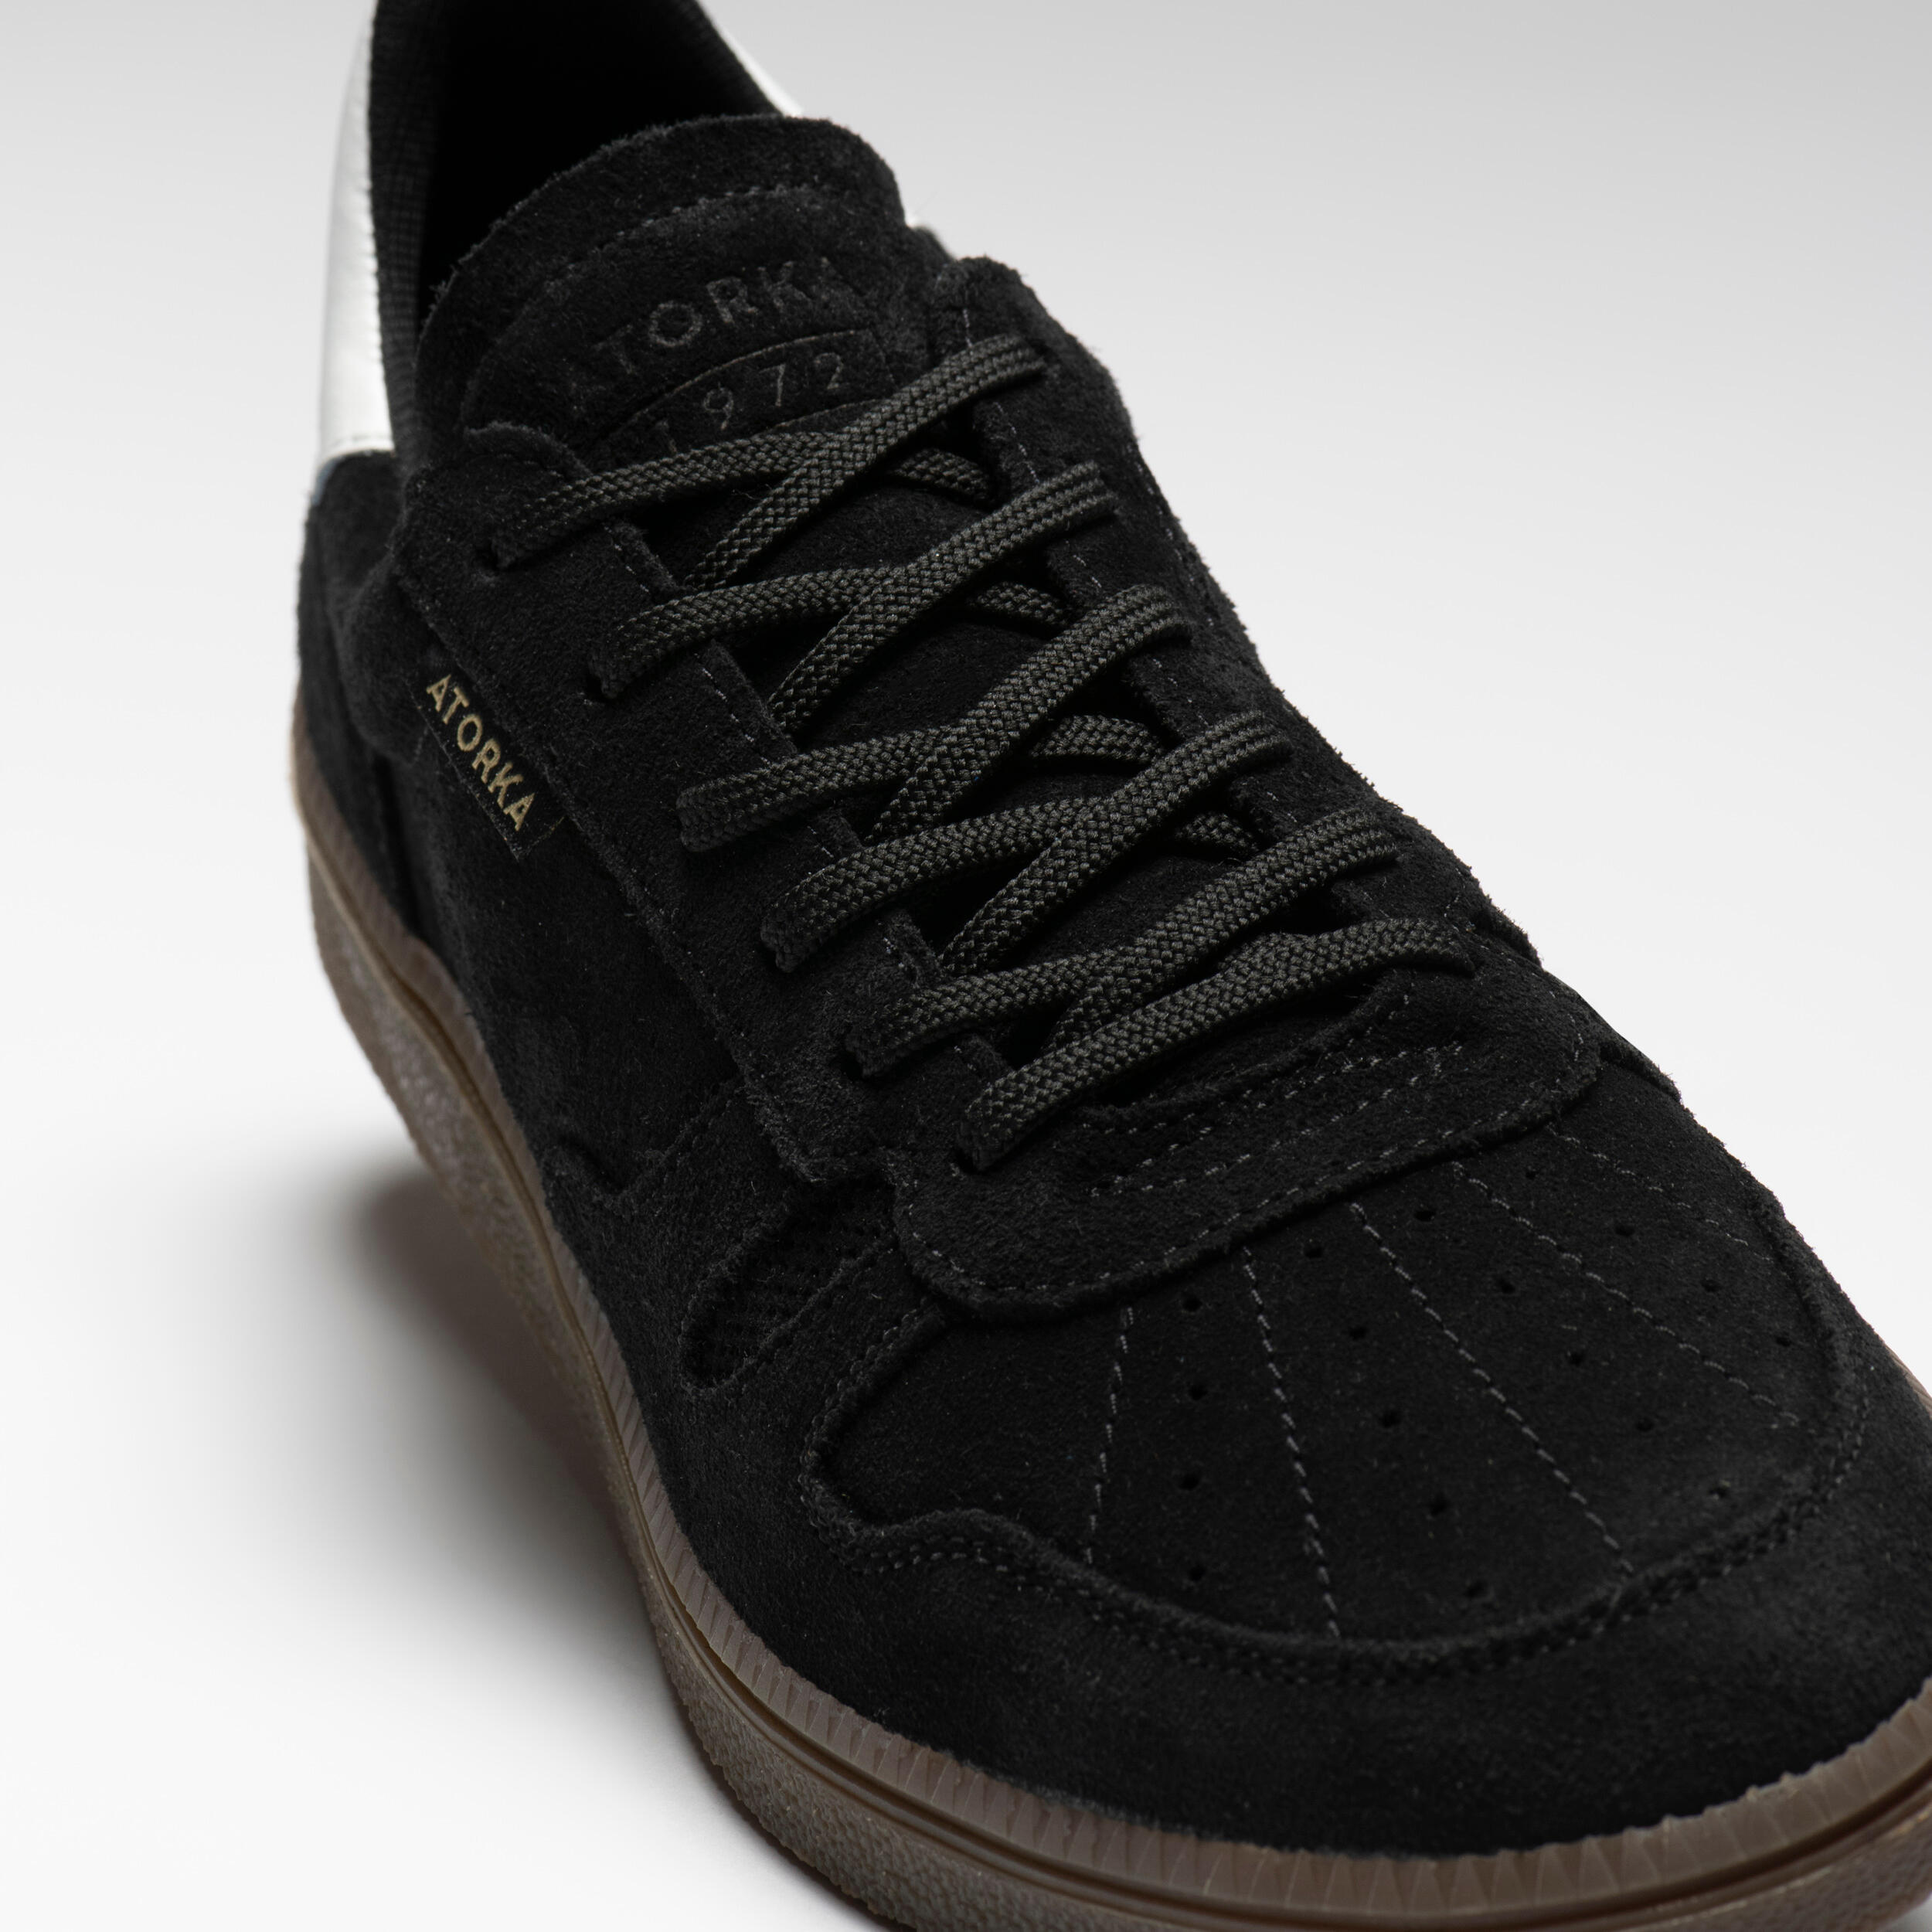 Men's/Women's Handball Goalkeeper Shoes GK500 - Black 11/16